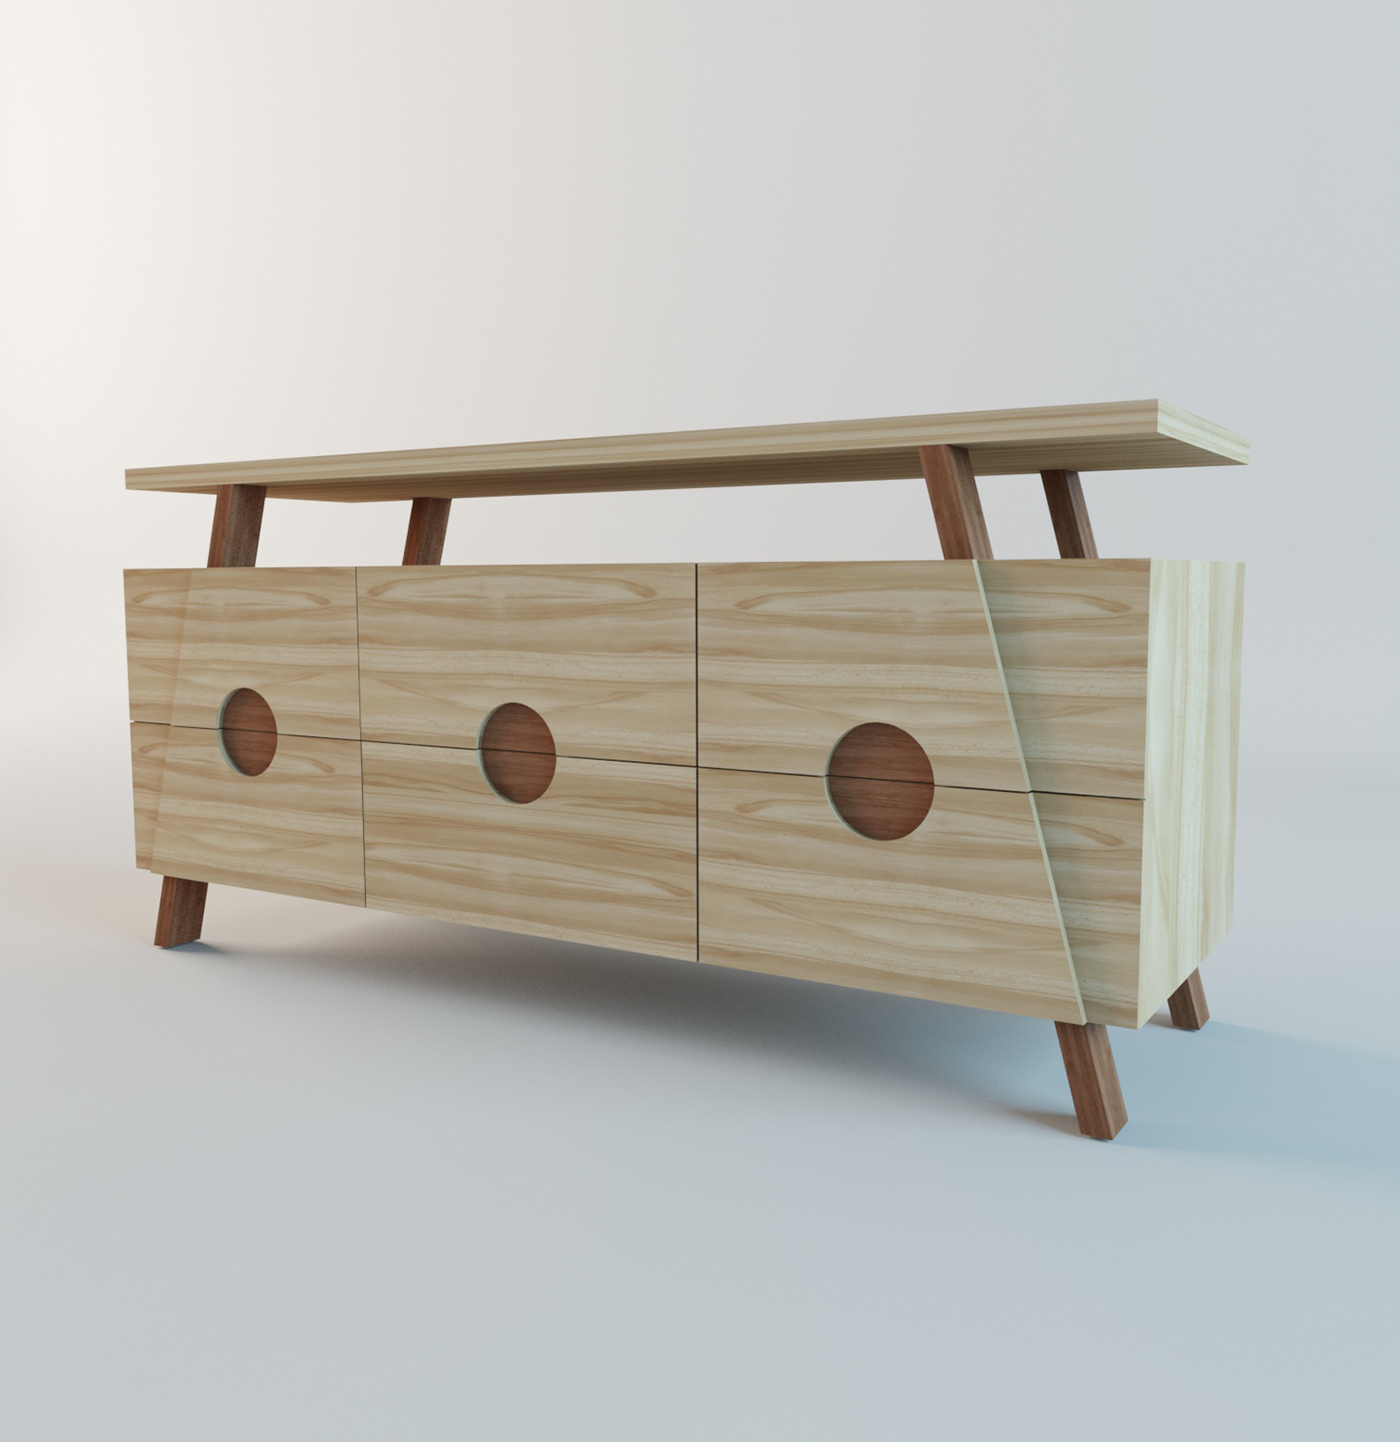 architecture furniture interior design  wood